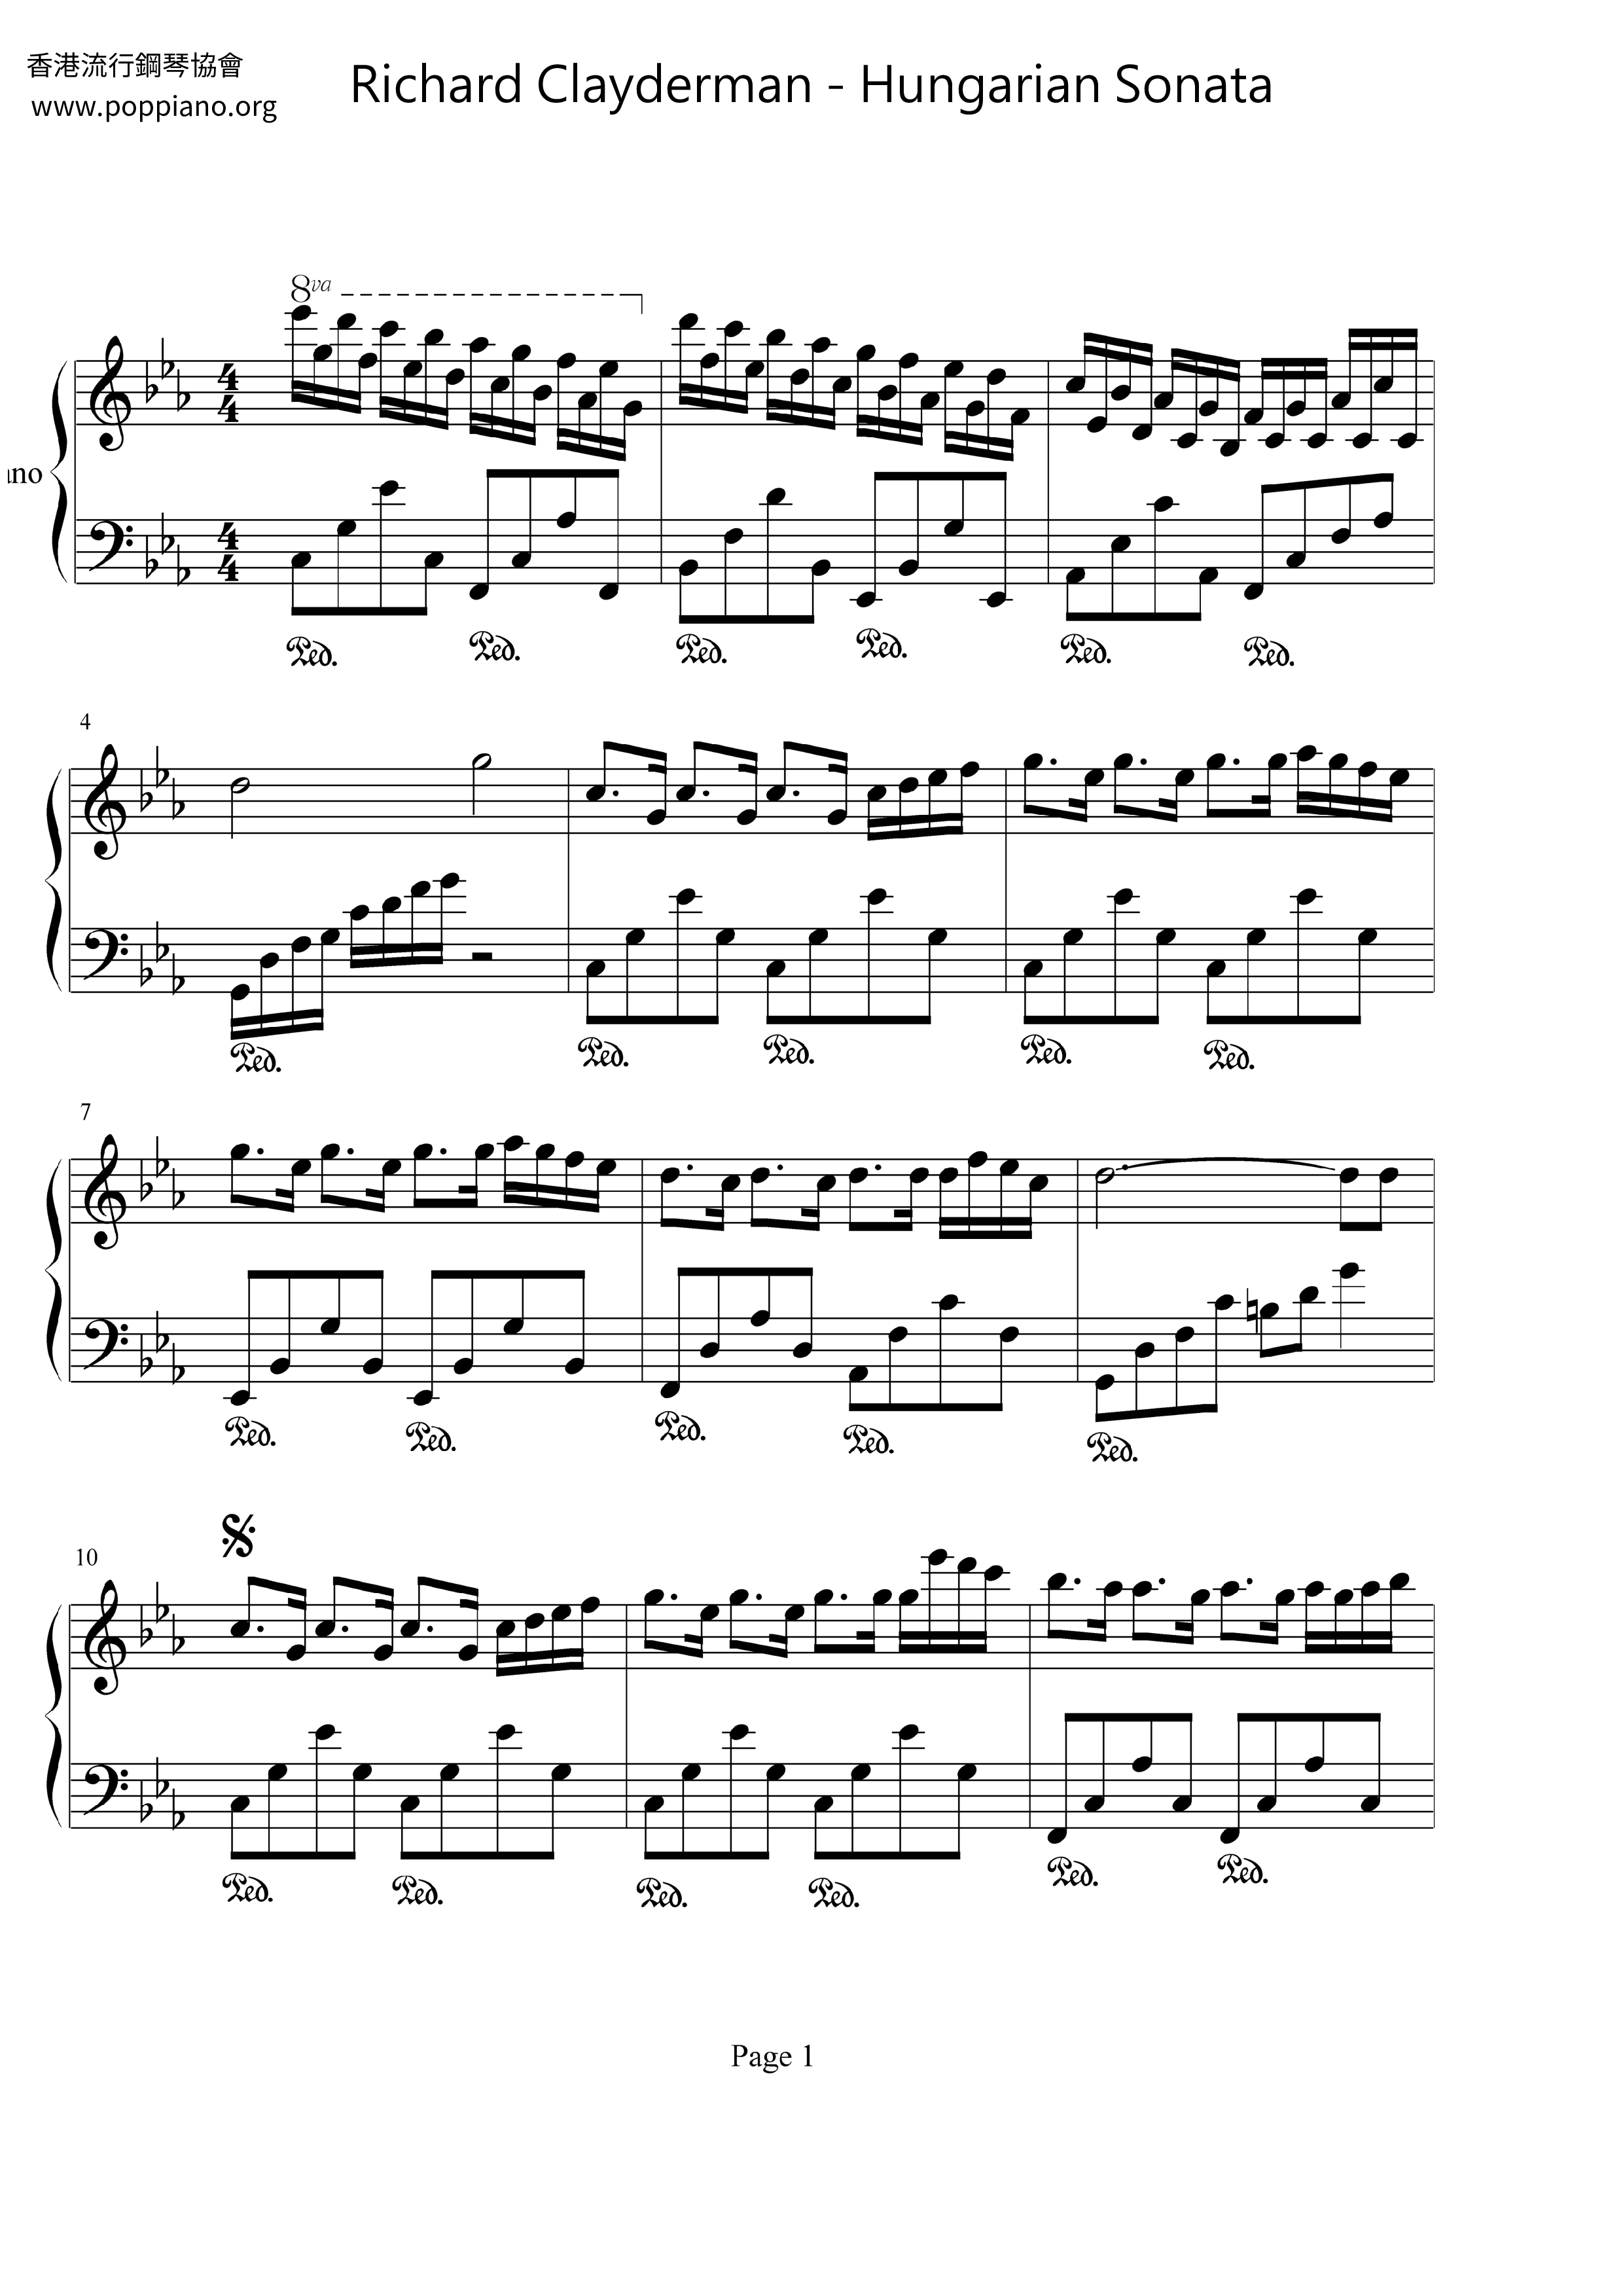 Hungarian Sonataピアノ譜